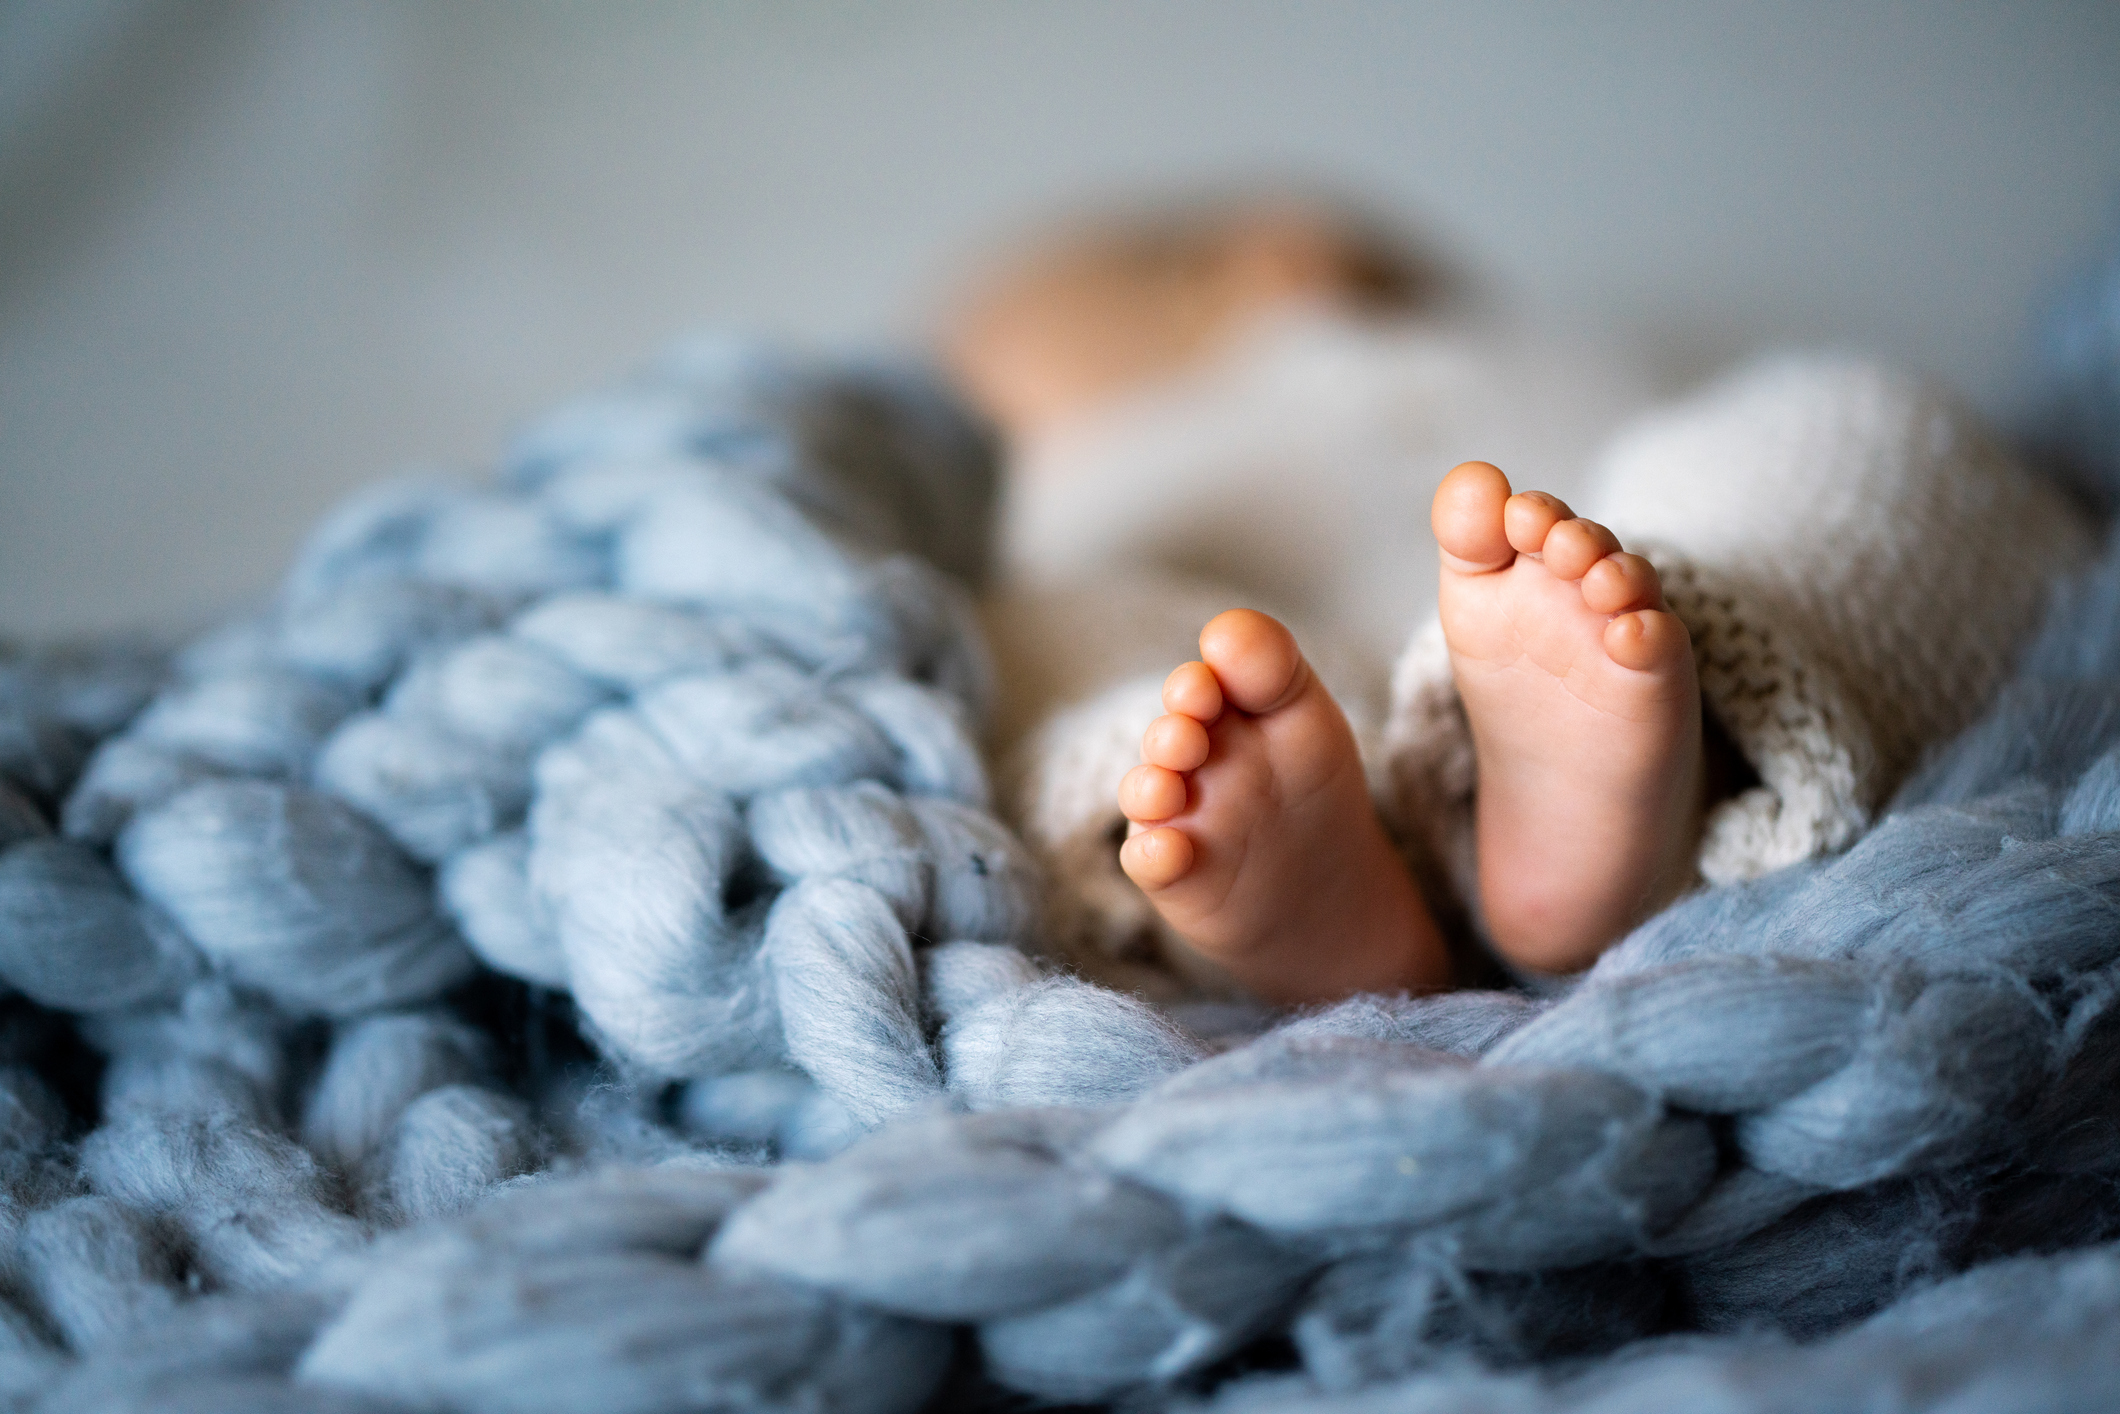 Νέες αποκαλύψεις για τη 13χρονη που γέννησε στις τουαλέτες νοσοκομείου - «Πέρασαν για φερμουάρ την σπονδυλική στήλη» του μωρού!